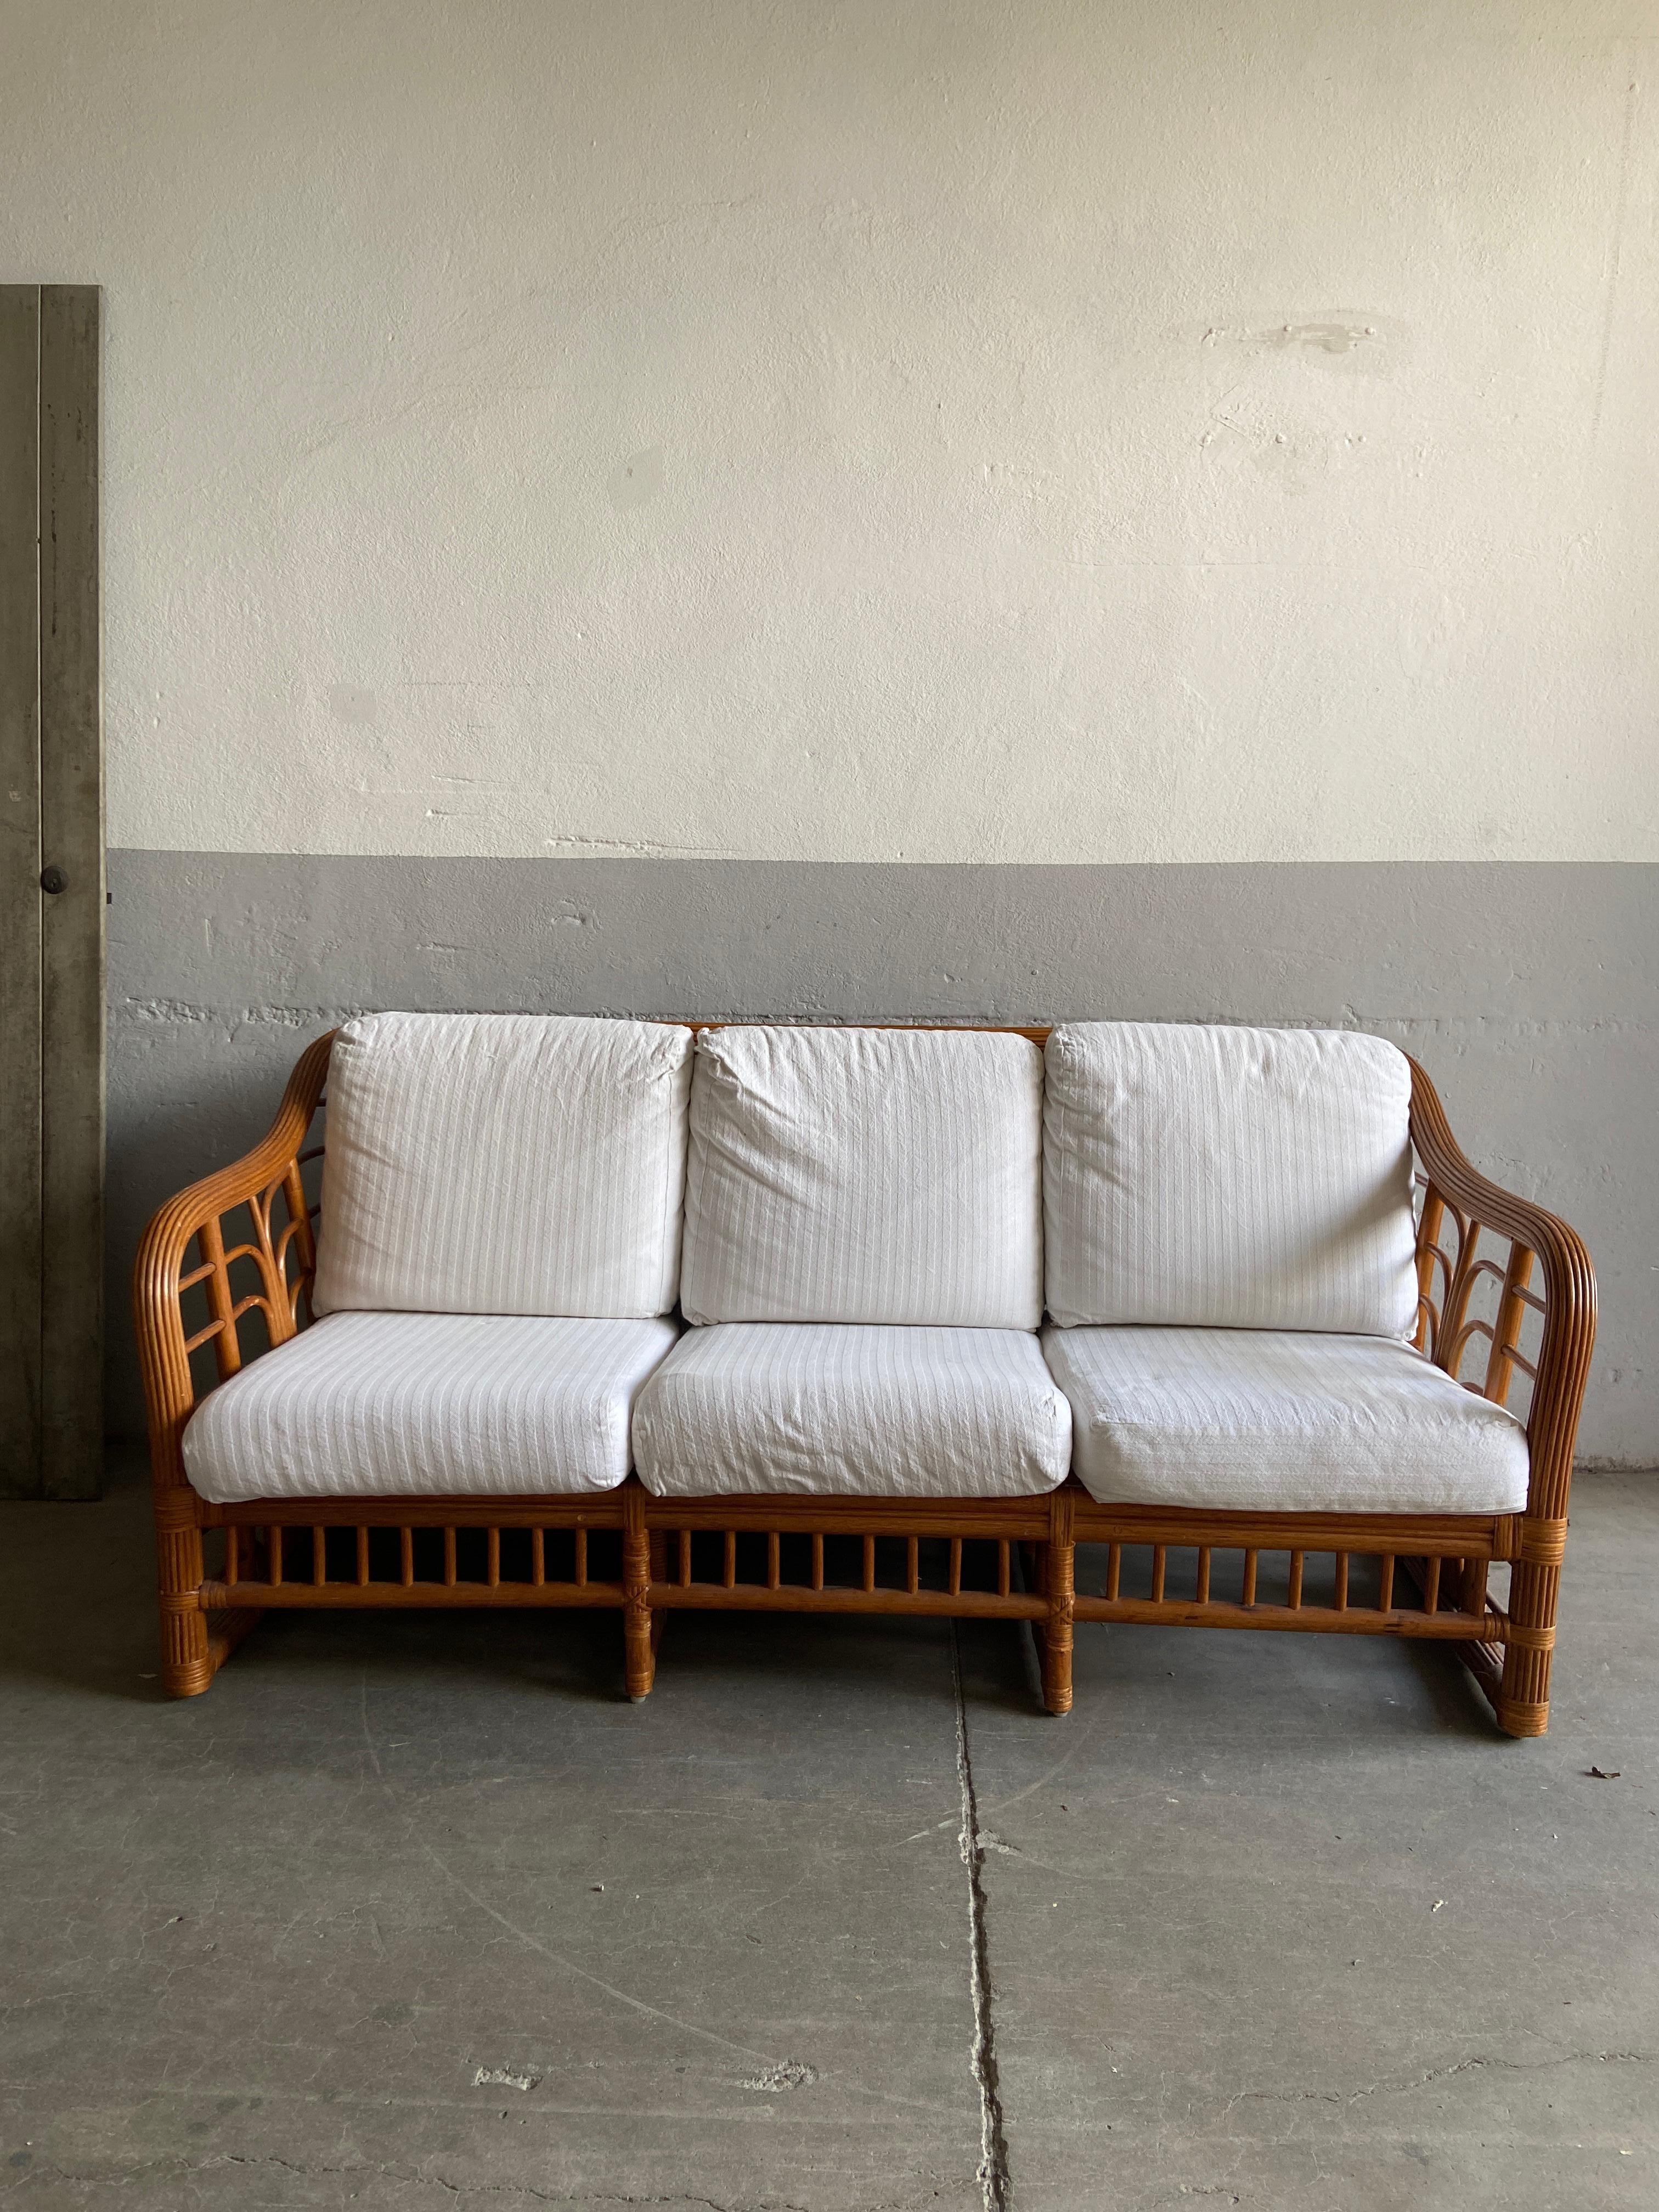 Modernes italienisches Bambussofa aus der Jahrhundertmitte mit Original-Baumwollkissen von Vivai del Sud, 1970er Jahre
Das Sofa ist in einem wirklich guten Vintage-Zustand, sehr stabil und bequem. Die Kissen sind einfach in weißer Farbe und können